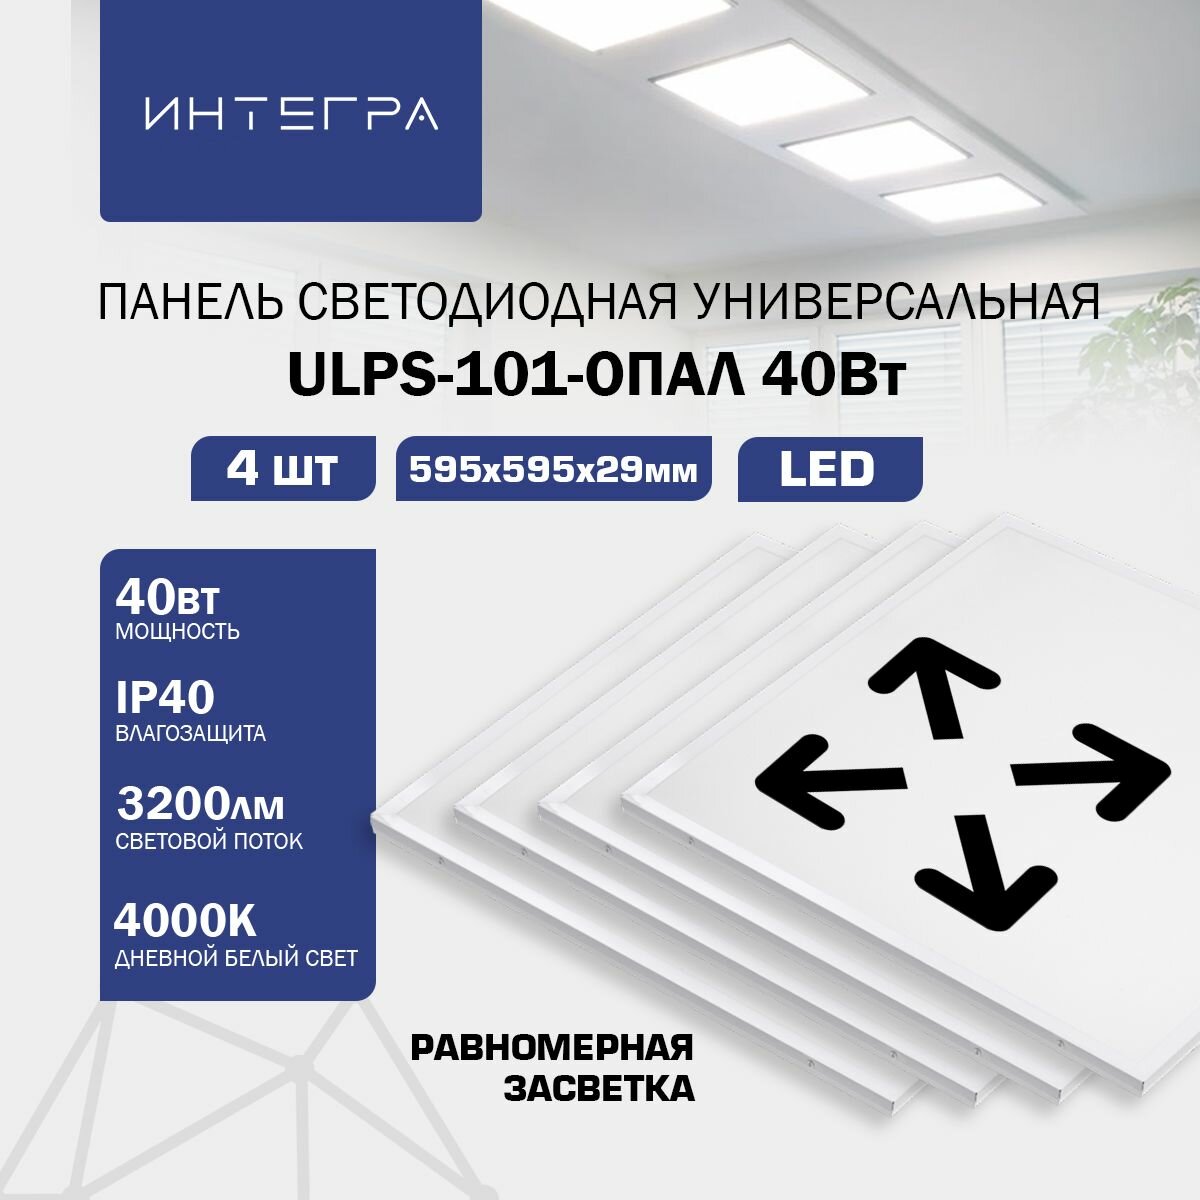 Панель светодиодная универсальная ULPS-101-ОПАЛ 40Вт 230В 4000К 3200Лм 595х595х29мм IP40 INTEGRA, 4 шт.